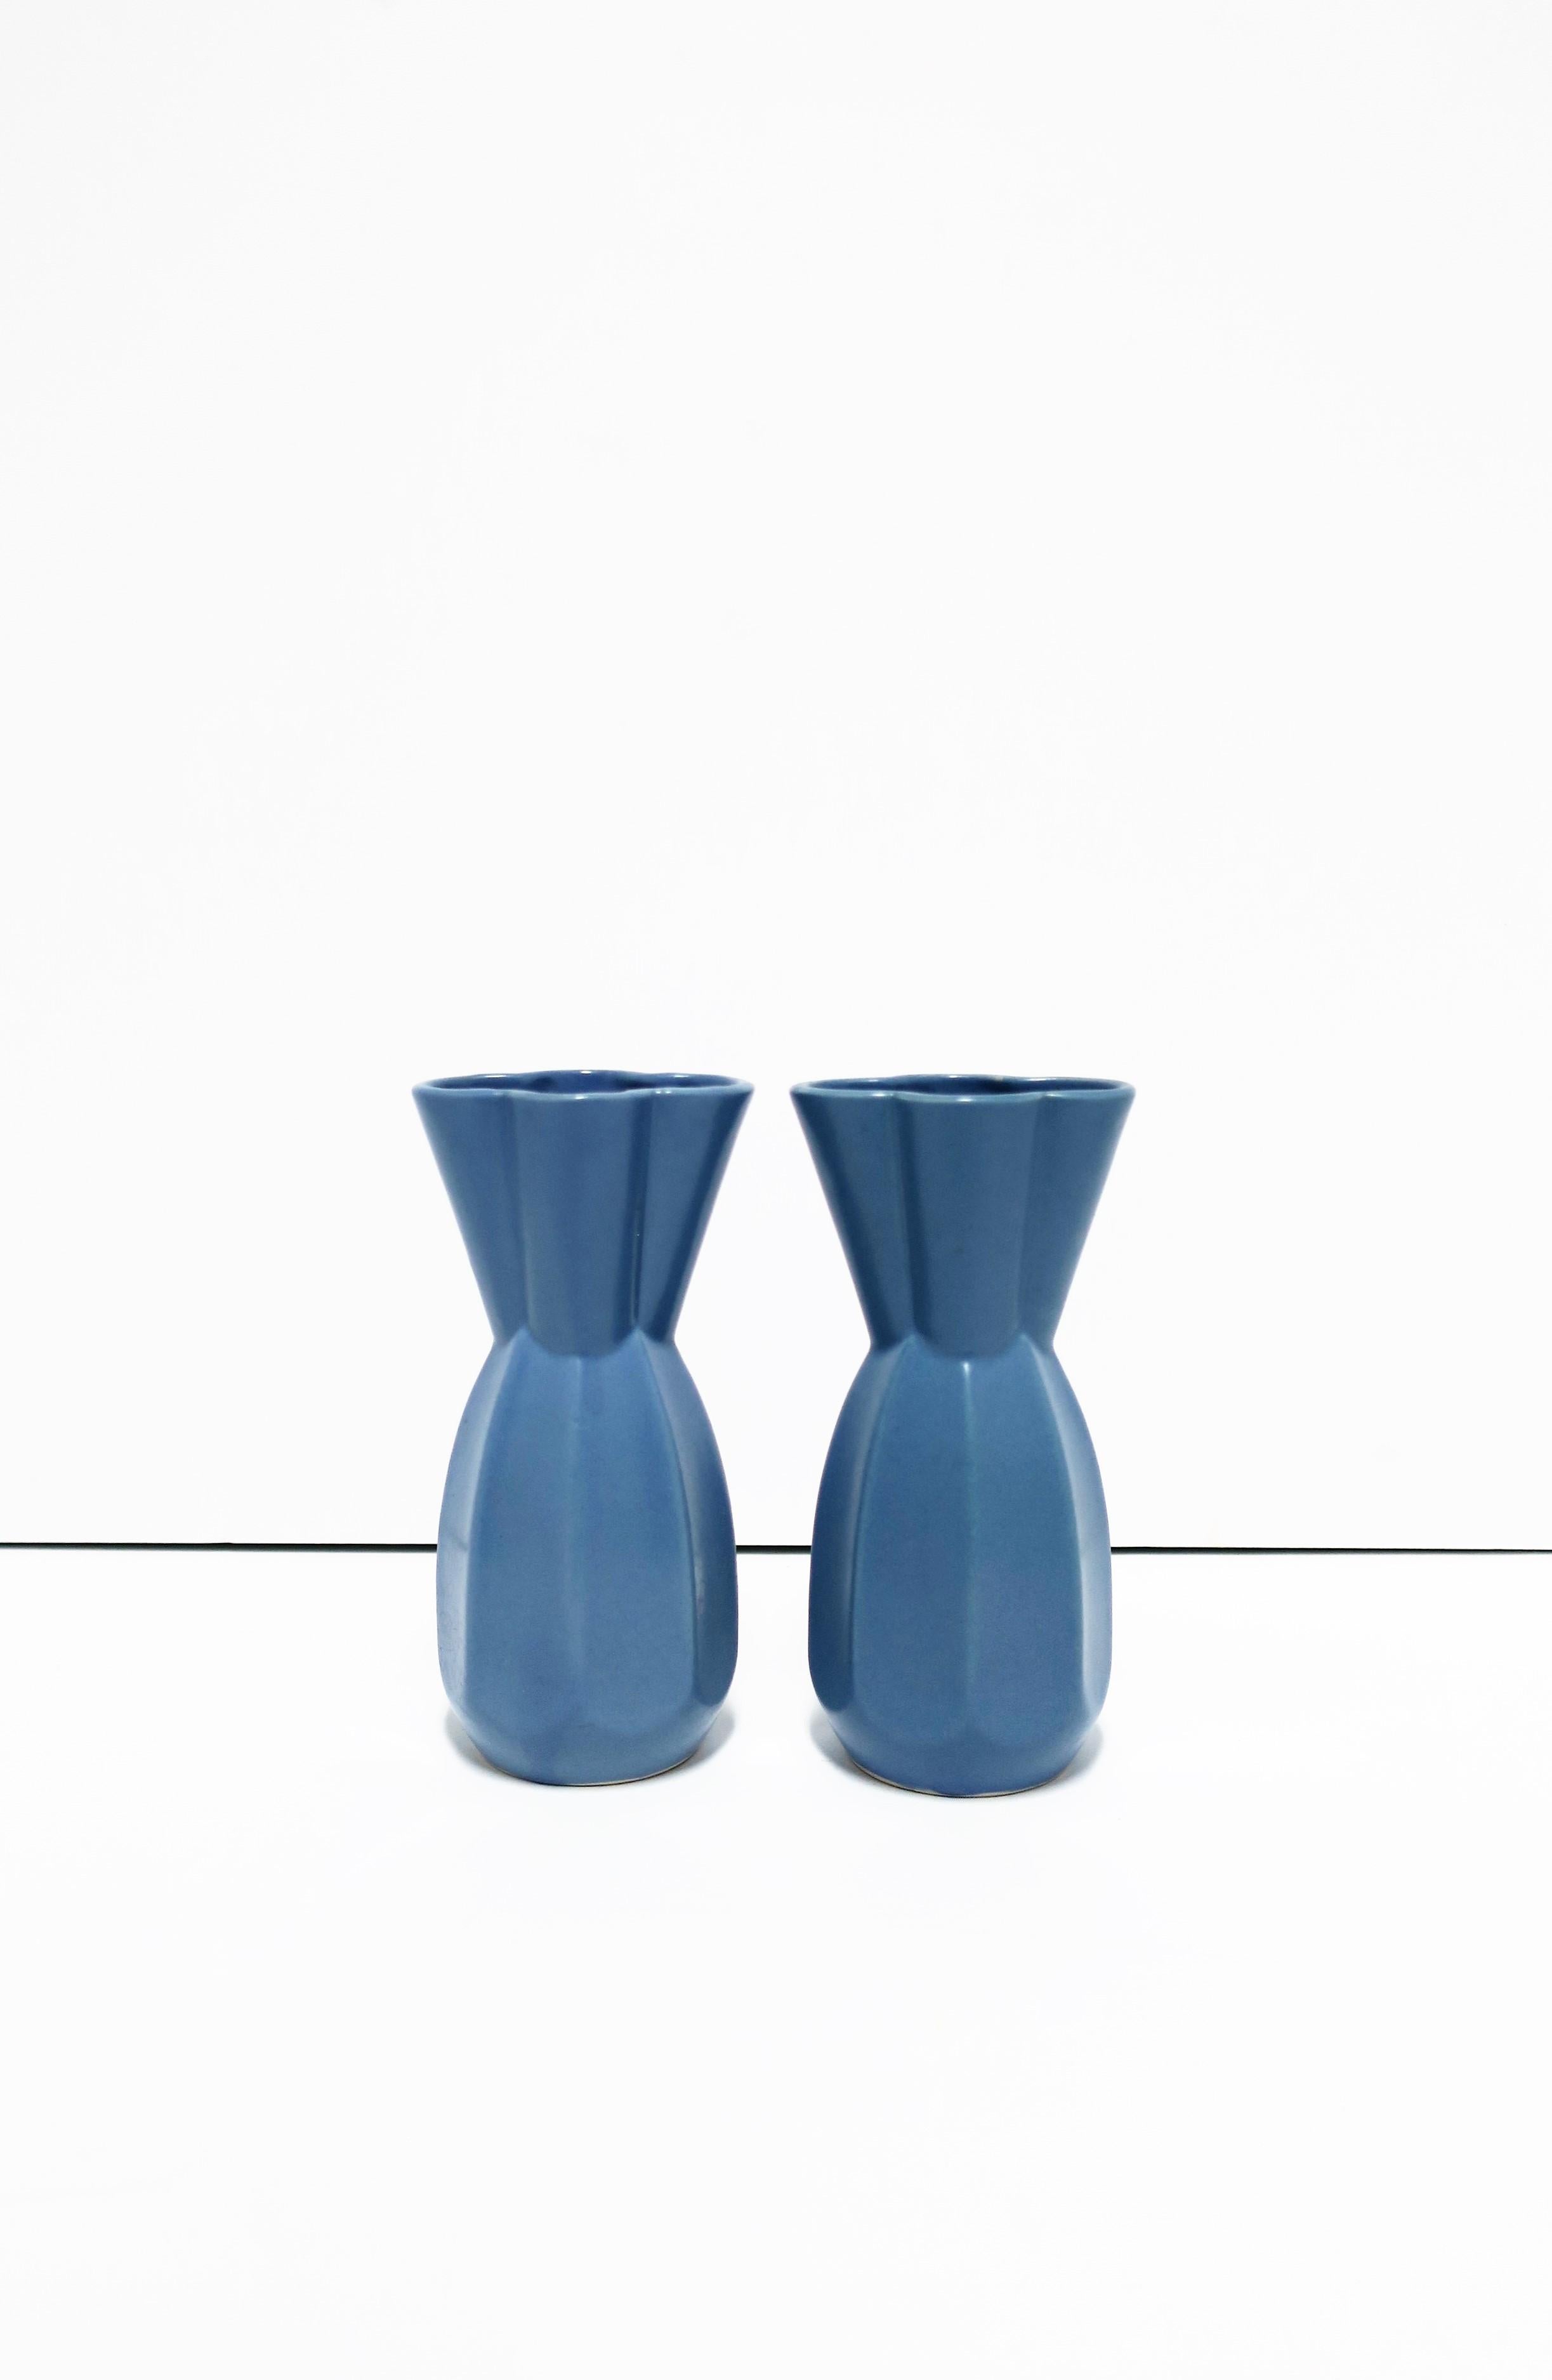 Ein wunderschönes Paar moderner veilchenblauer japanischer Vasen mit achteckigem Sockel, gekniffener Taille und kleeblattartigem Muster am Hals/oben. Auf der Unterseite markiert, wie auf Bild 15 zu sehen, CIRCA frühes 20. Jahrhundert Japan,